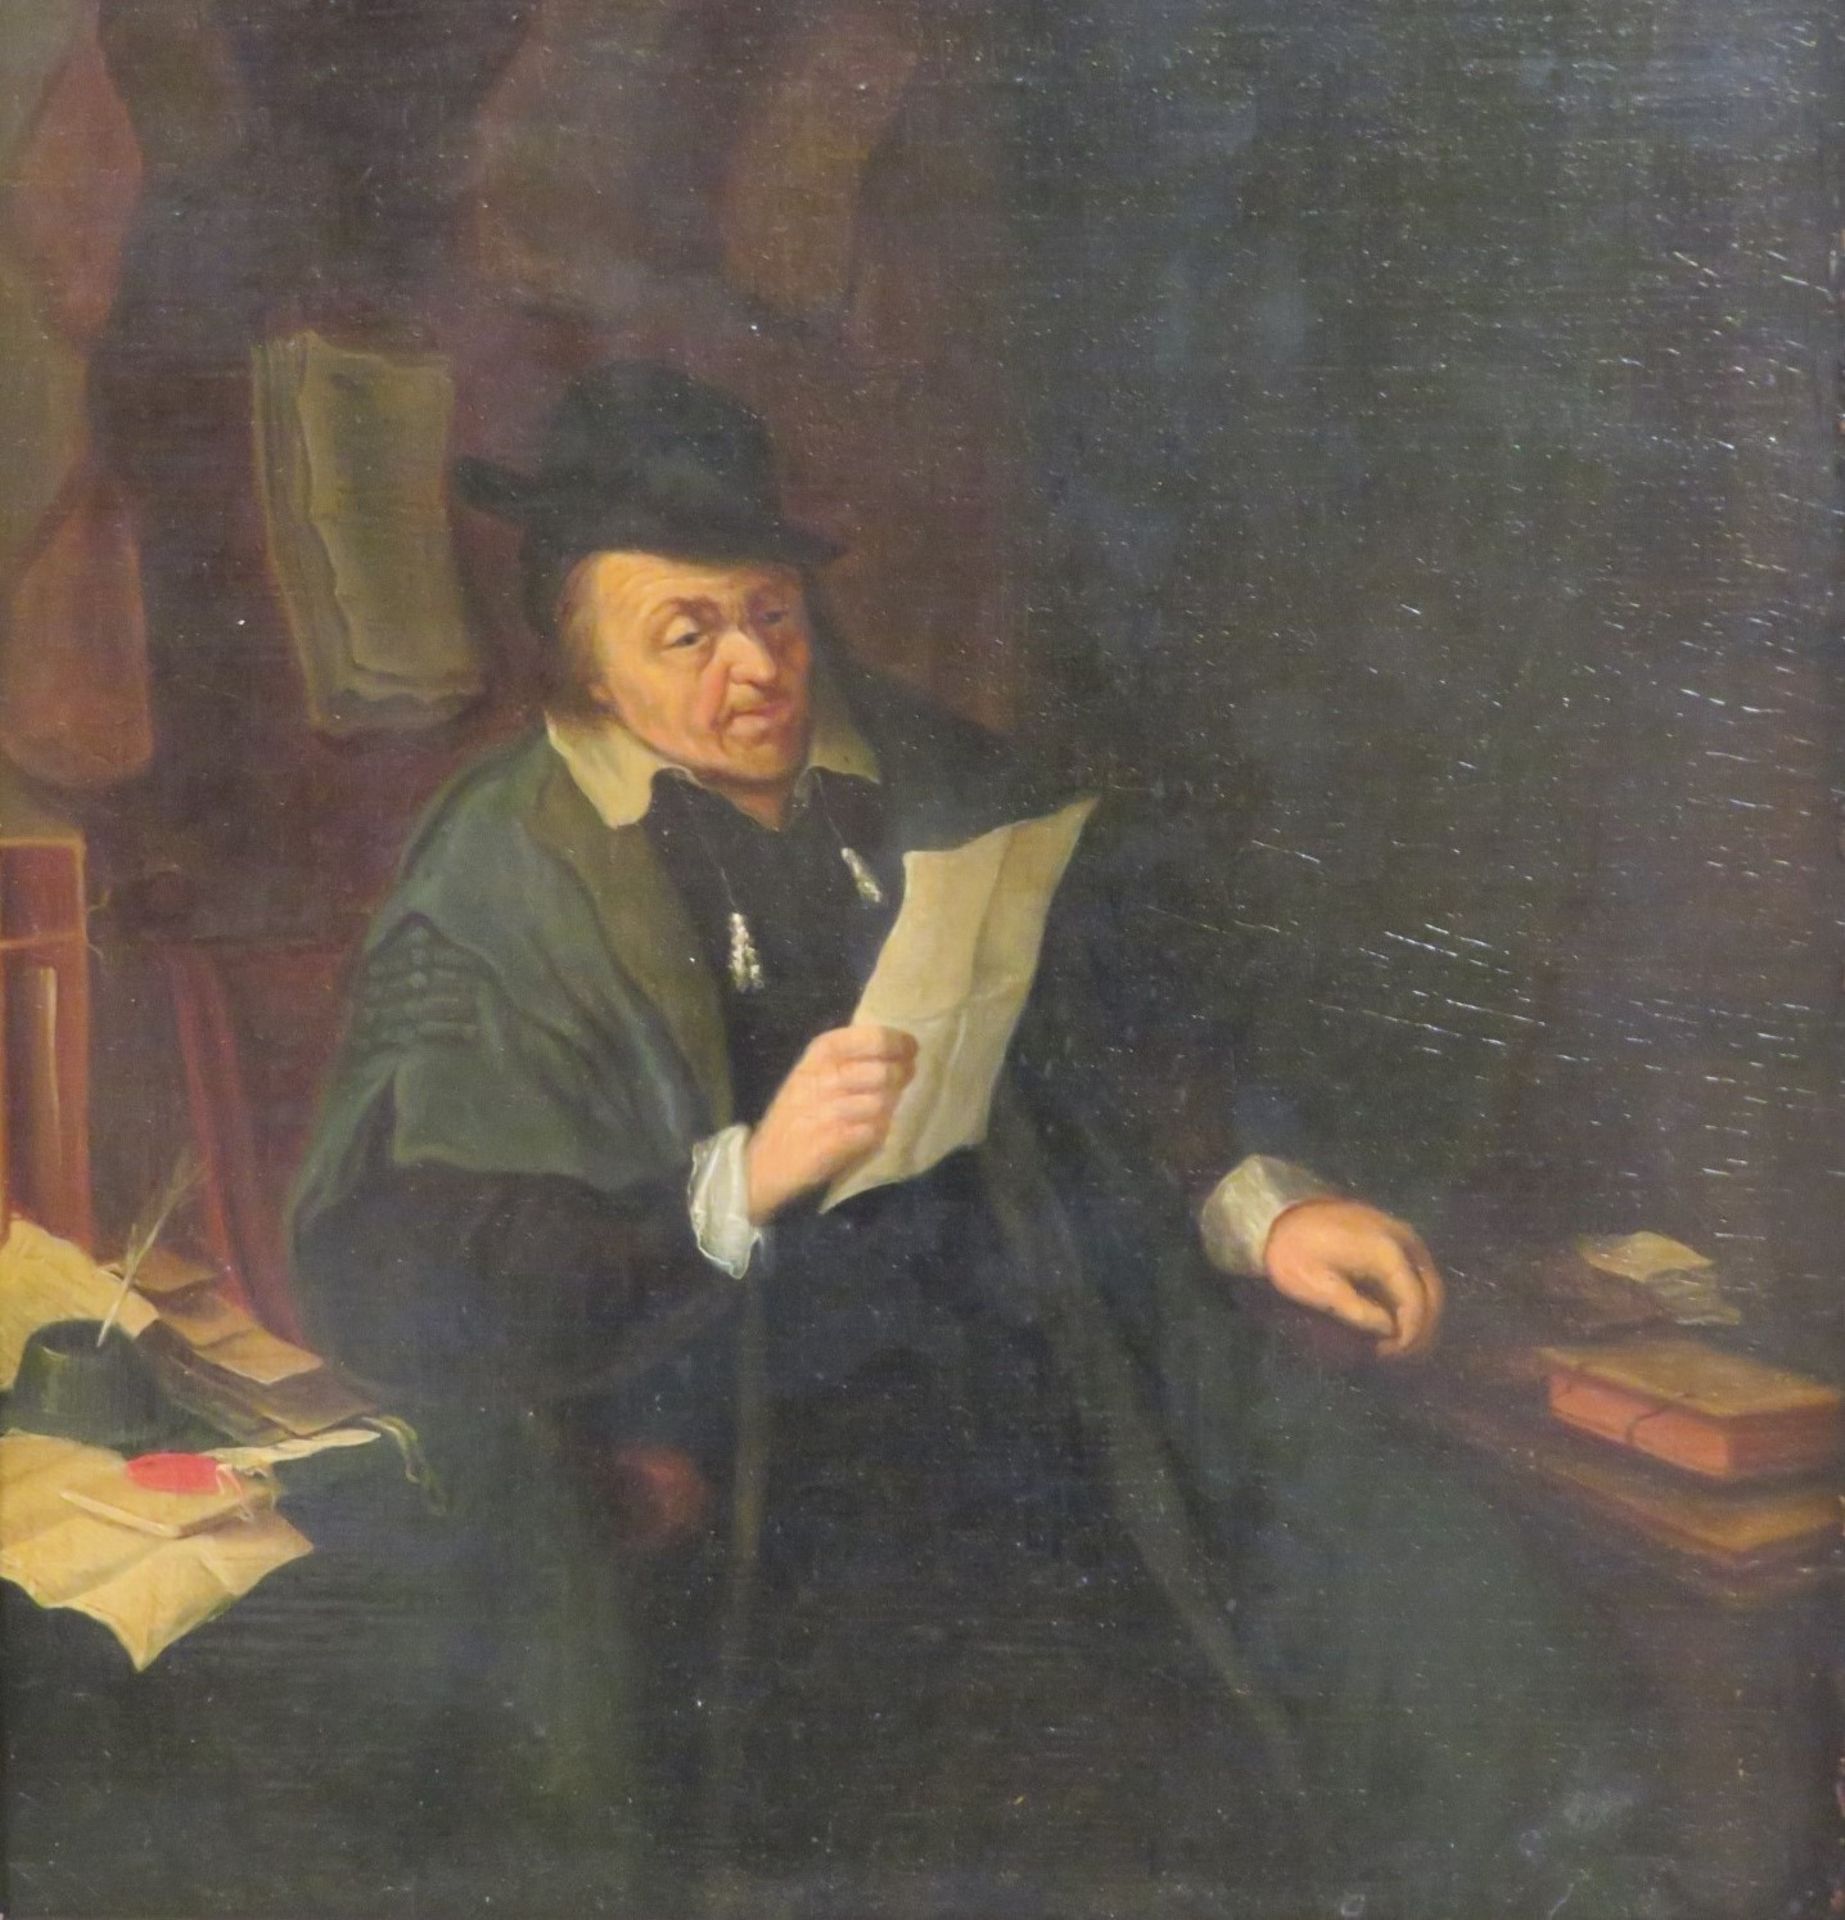 1. Hälfte 19. Jahrhundert, "Lesender mit Hut umgeben von Buch und Schriftstücken", Öl/Holz, 29 x 27